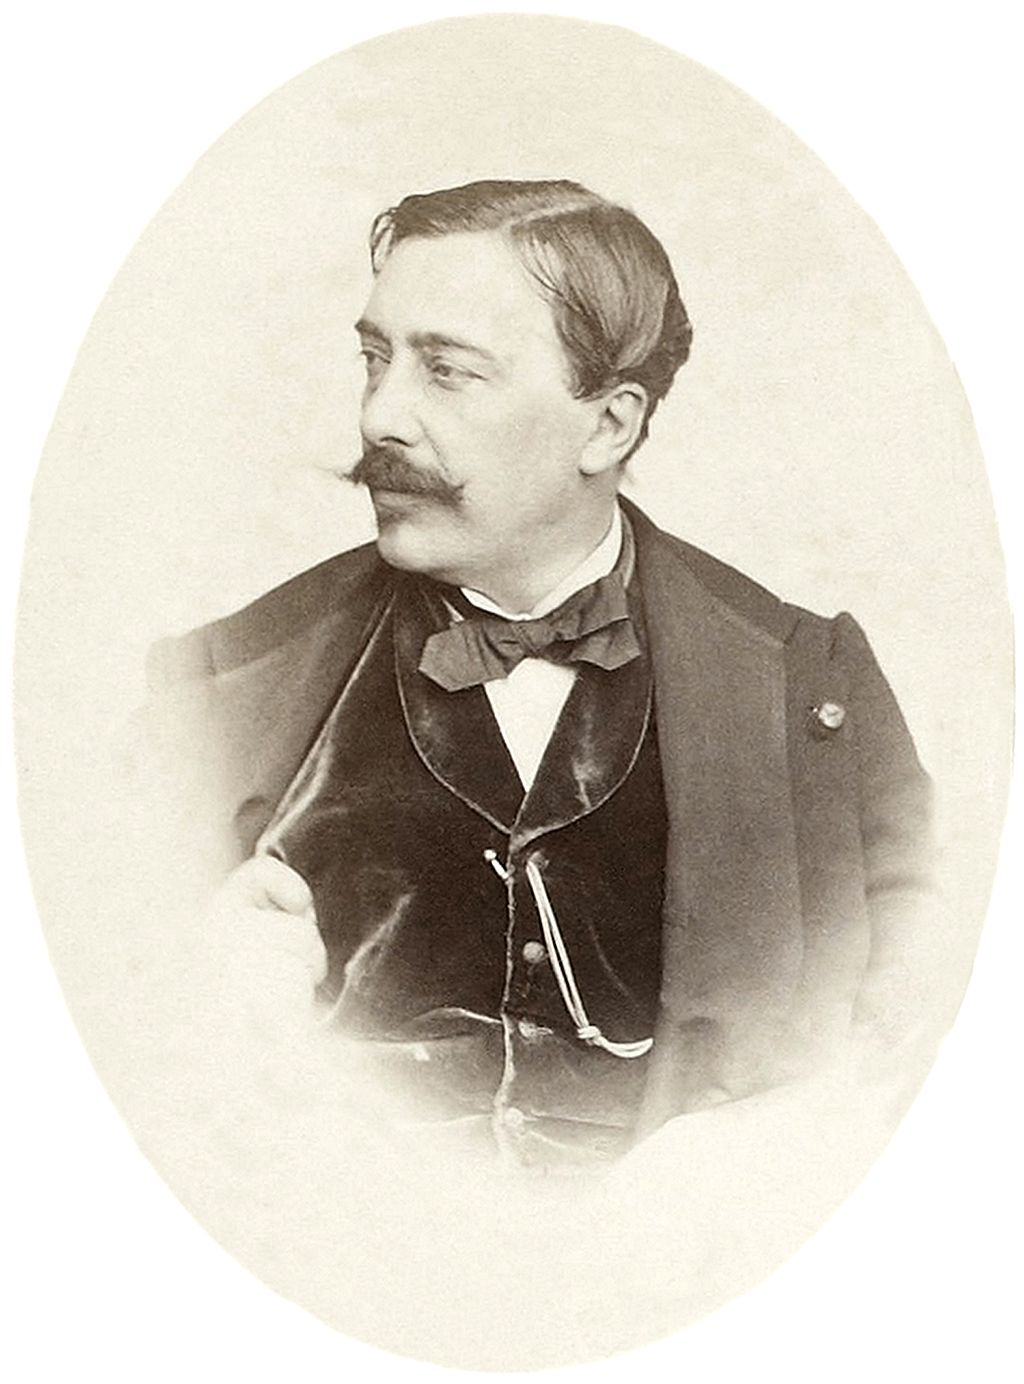 Alfred Stevens (1823 - 1906), peintre belge. Photo provenant de l'album personnel d' Édouard Manet.